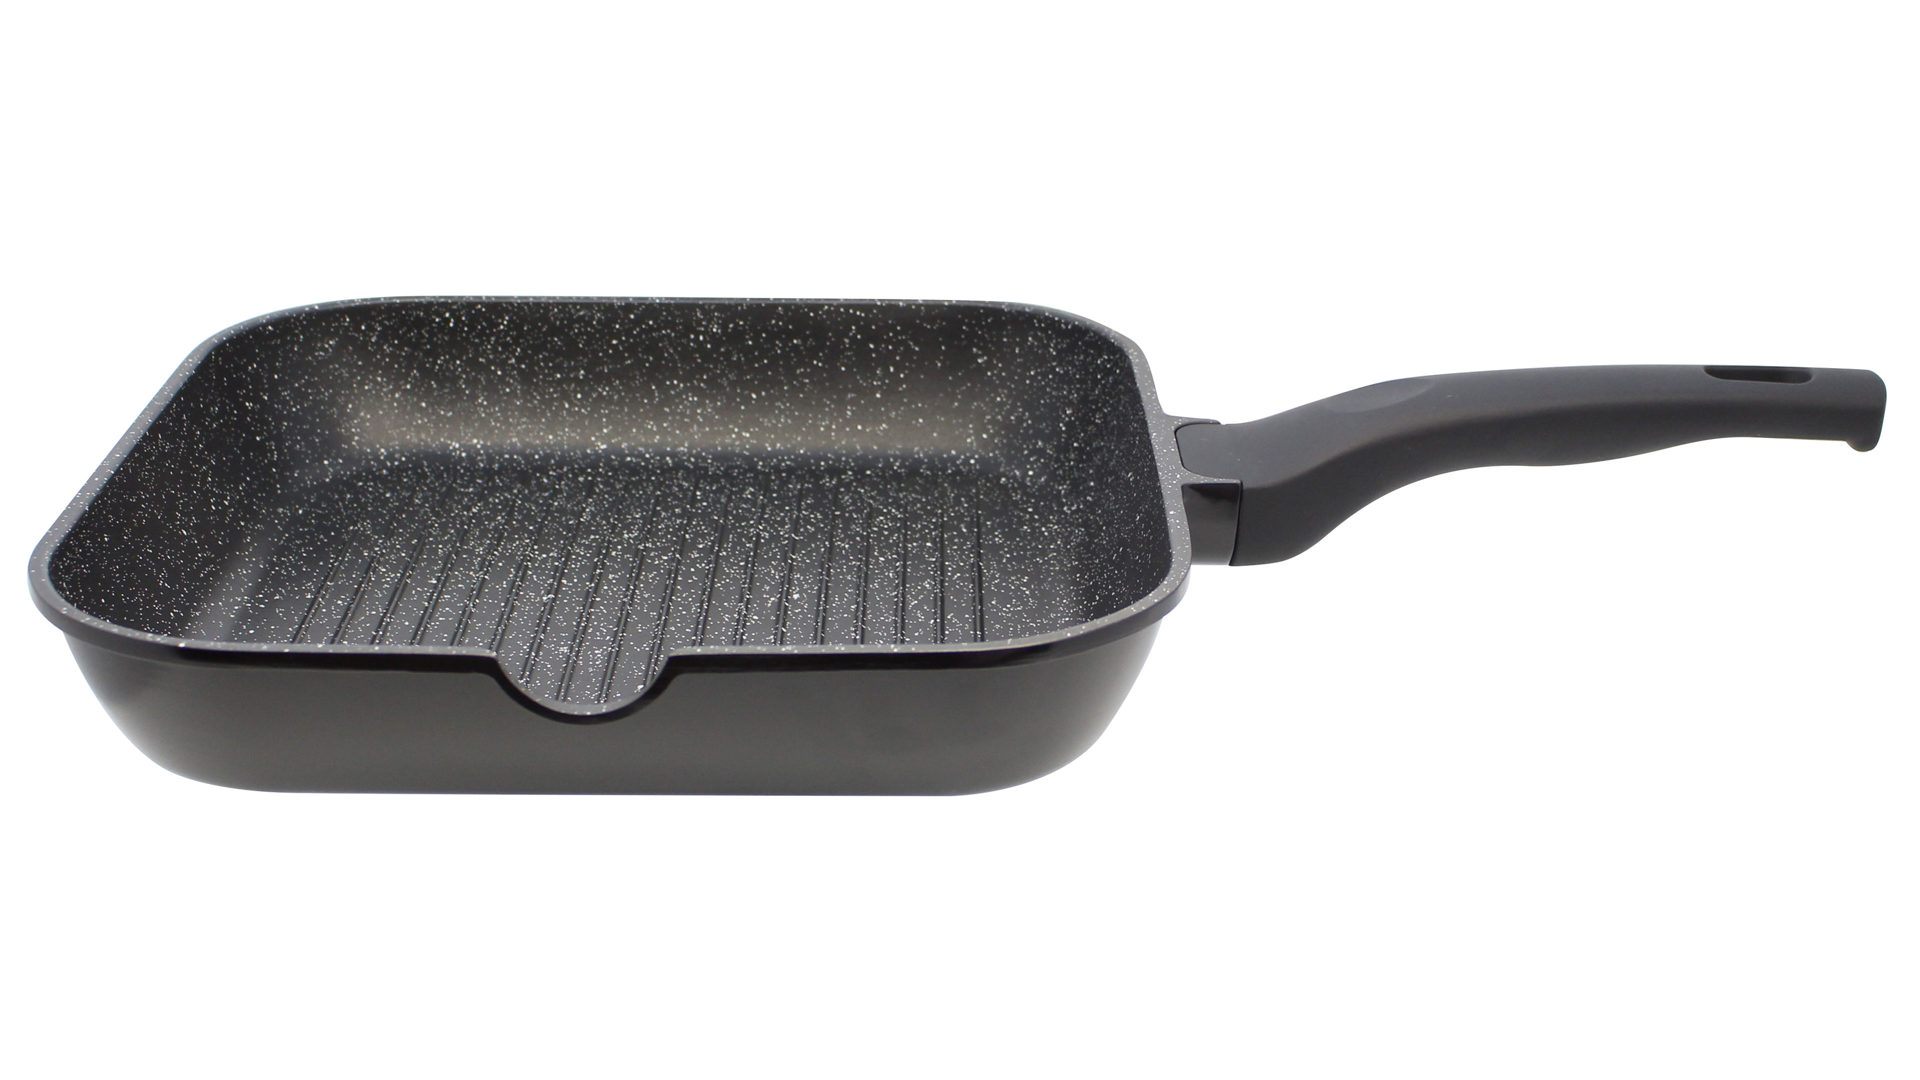 Grillpfanne Elo aus Metall in Schwarz ELO® Grillpfanne Siloncast Aluguss – ca. 28 x 28 cm